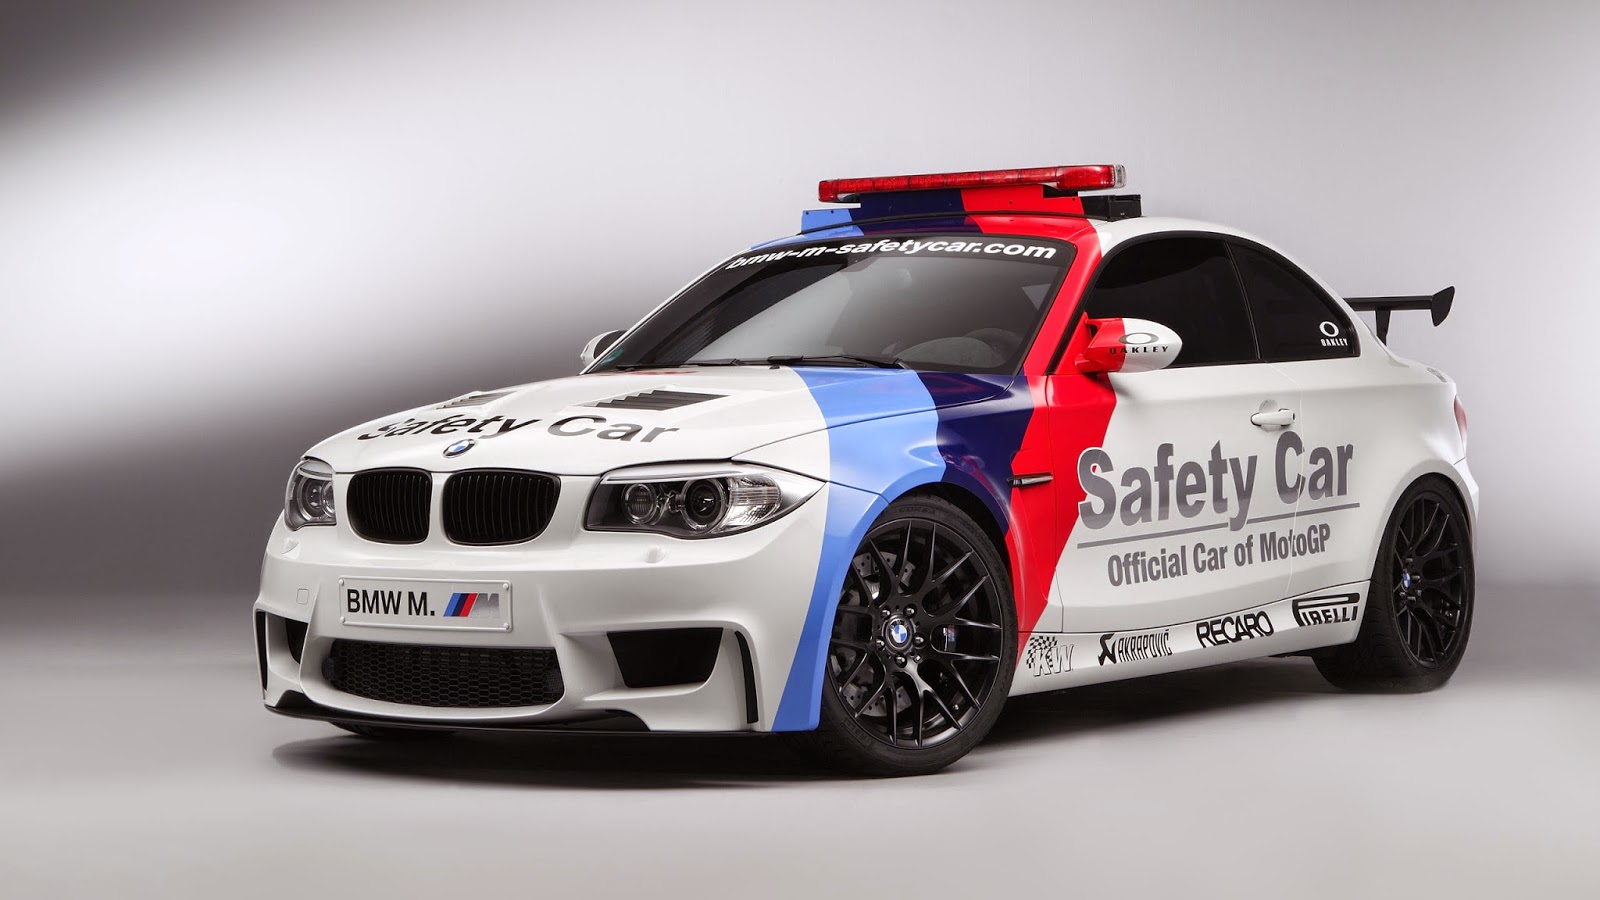 Wallpaper Mobil BMW Safety Car Moto GP